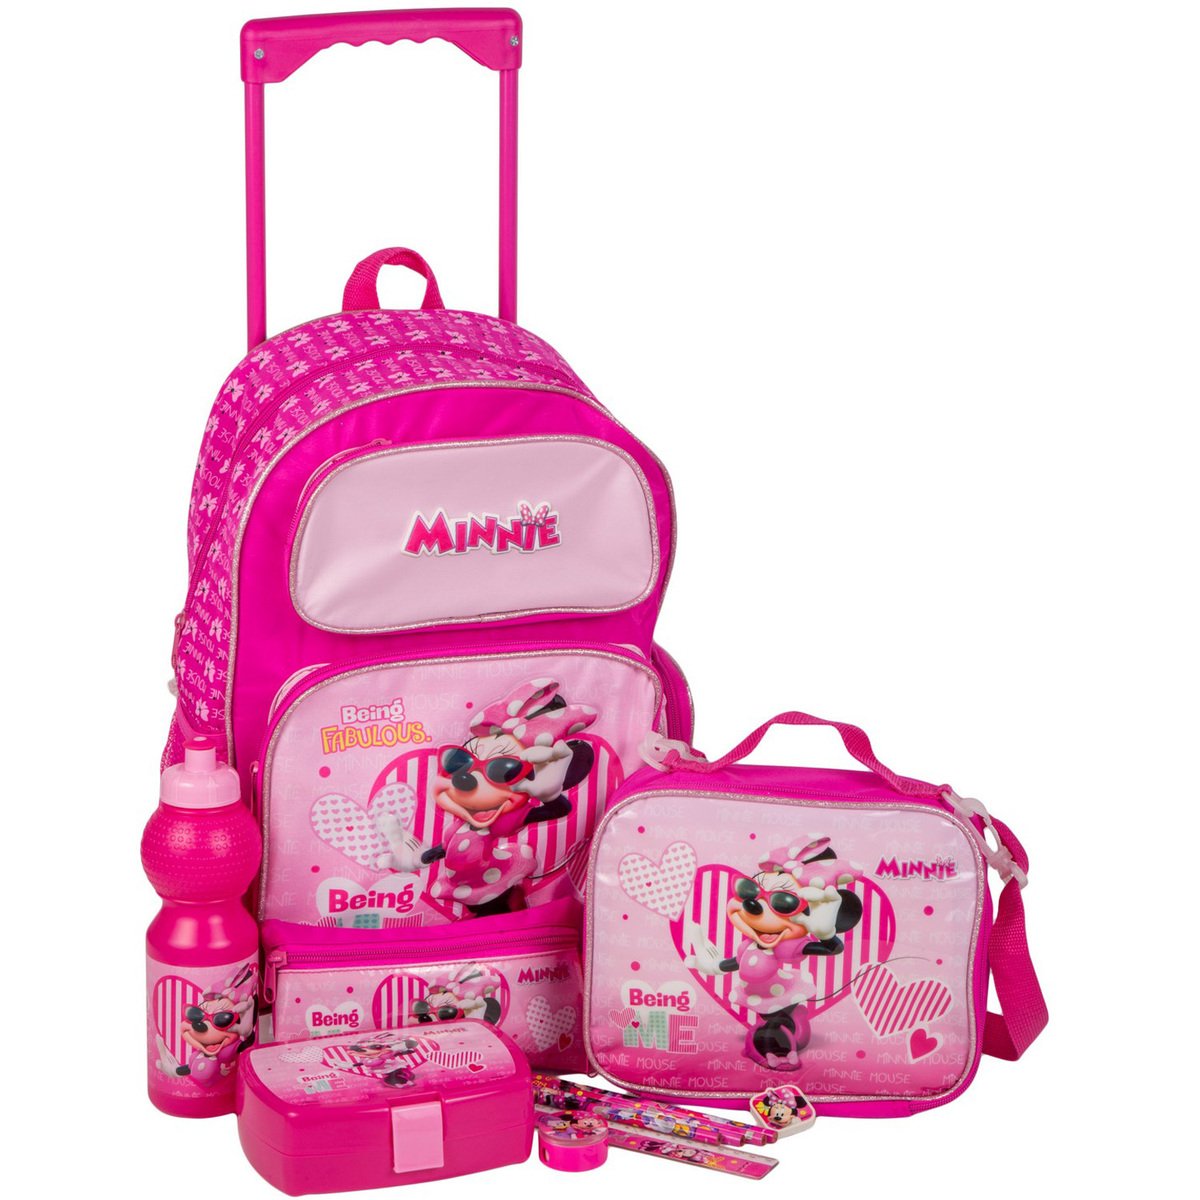 Minnie School Trolley Bundle Pack 12Piece Set FK100377 16inch